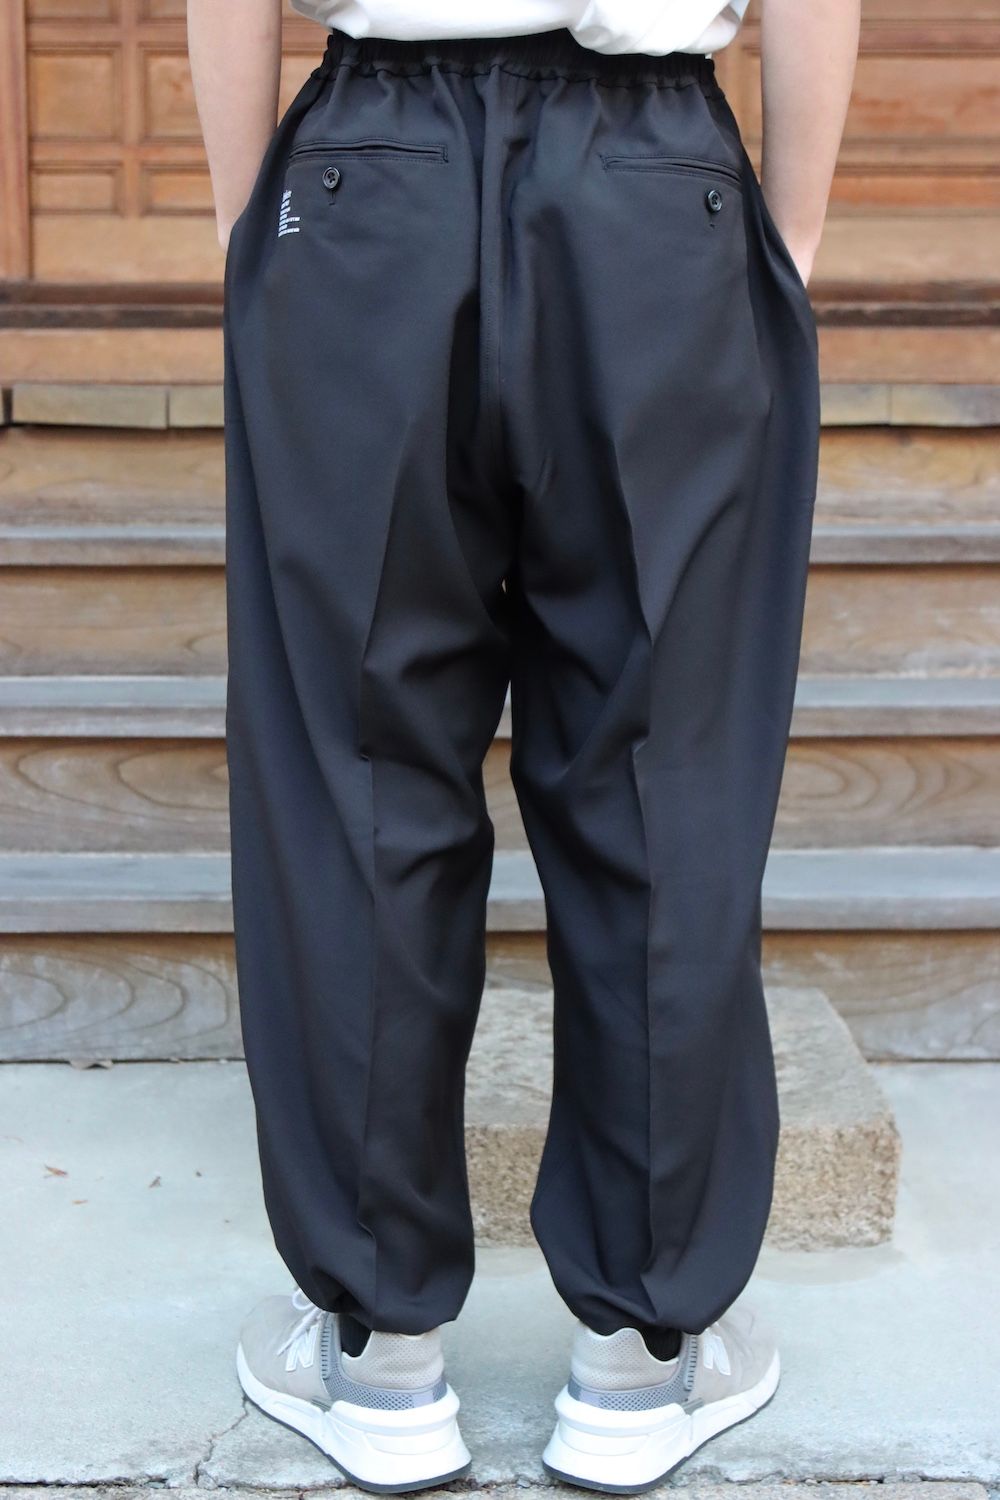 DAIWA PIER39 FreshService Tech Trousers | www.cestujemtrekujem.com